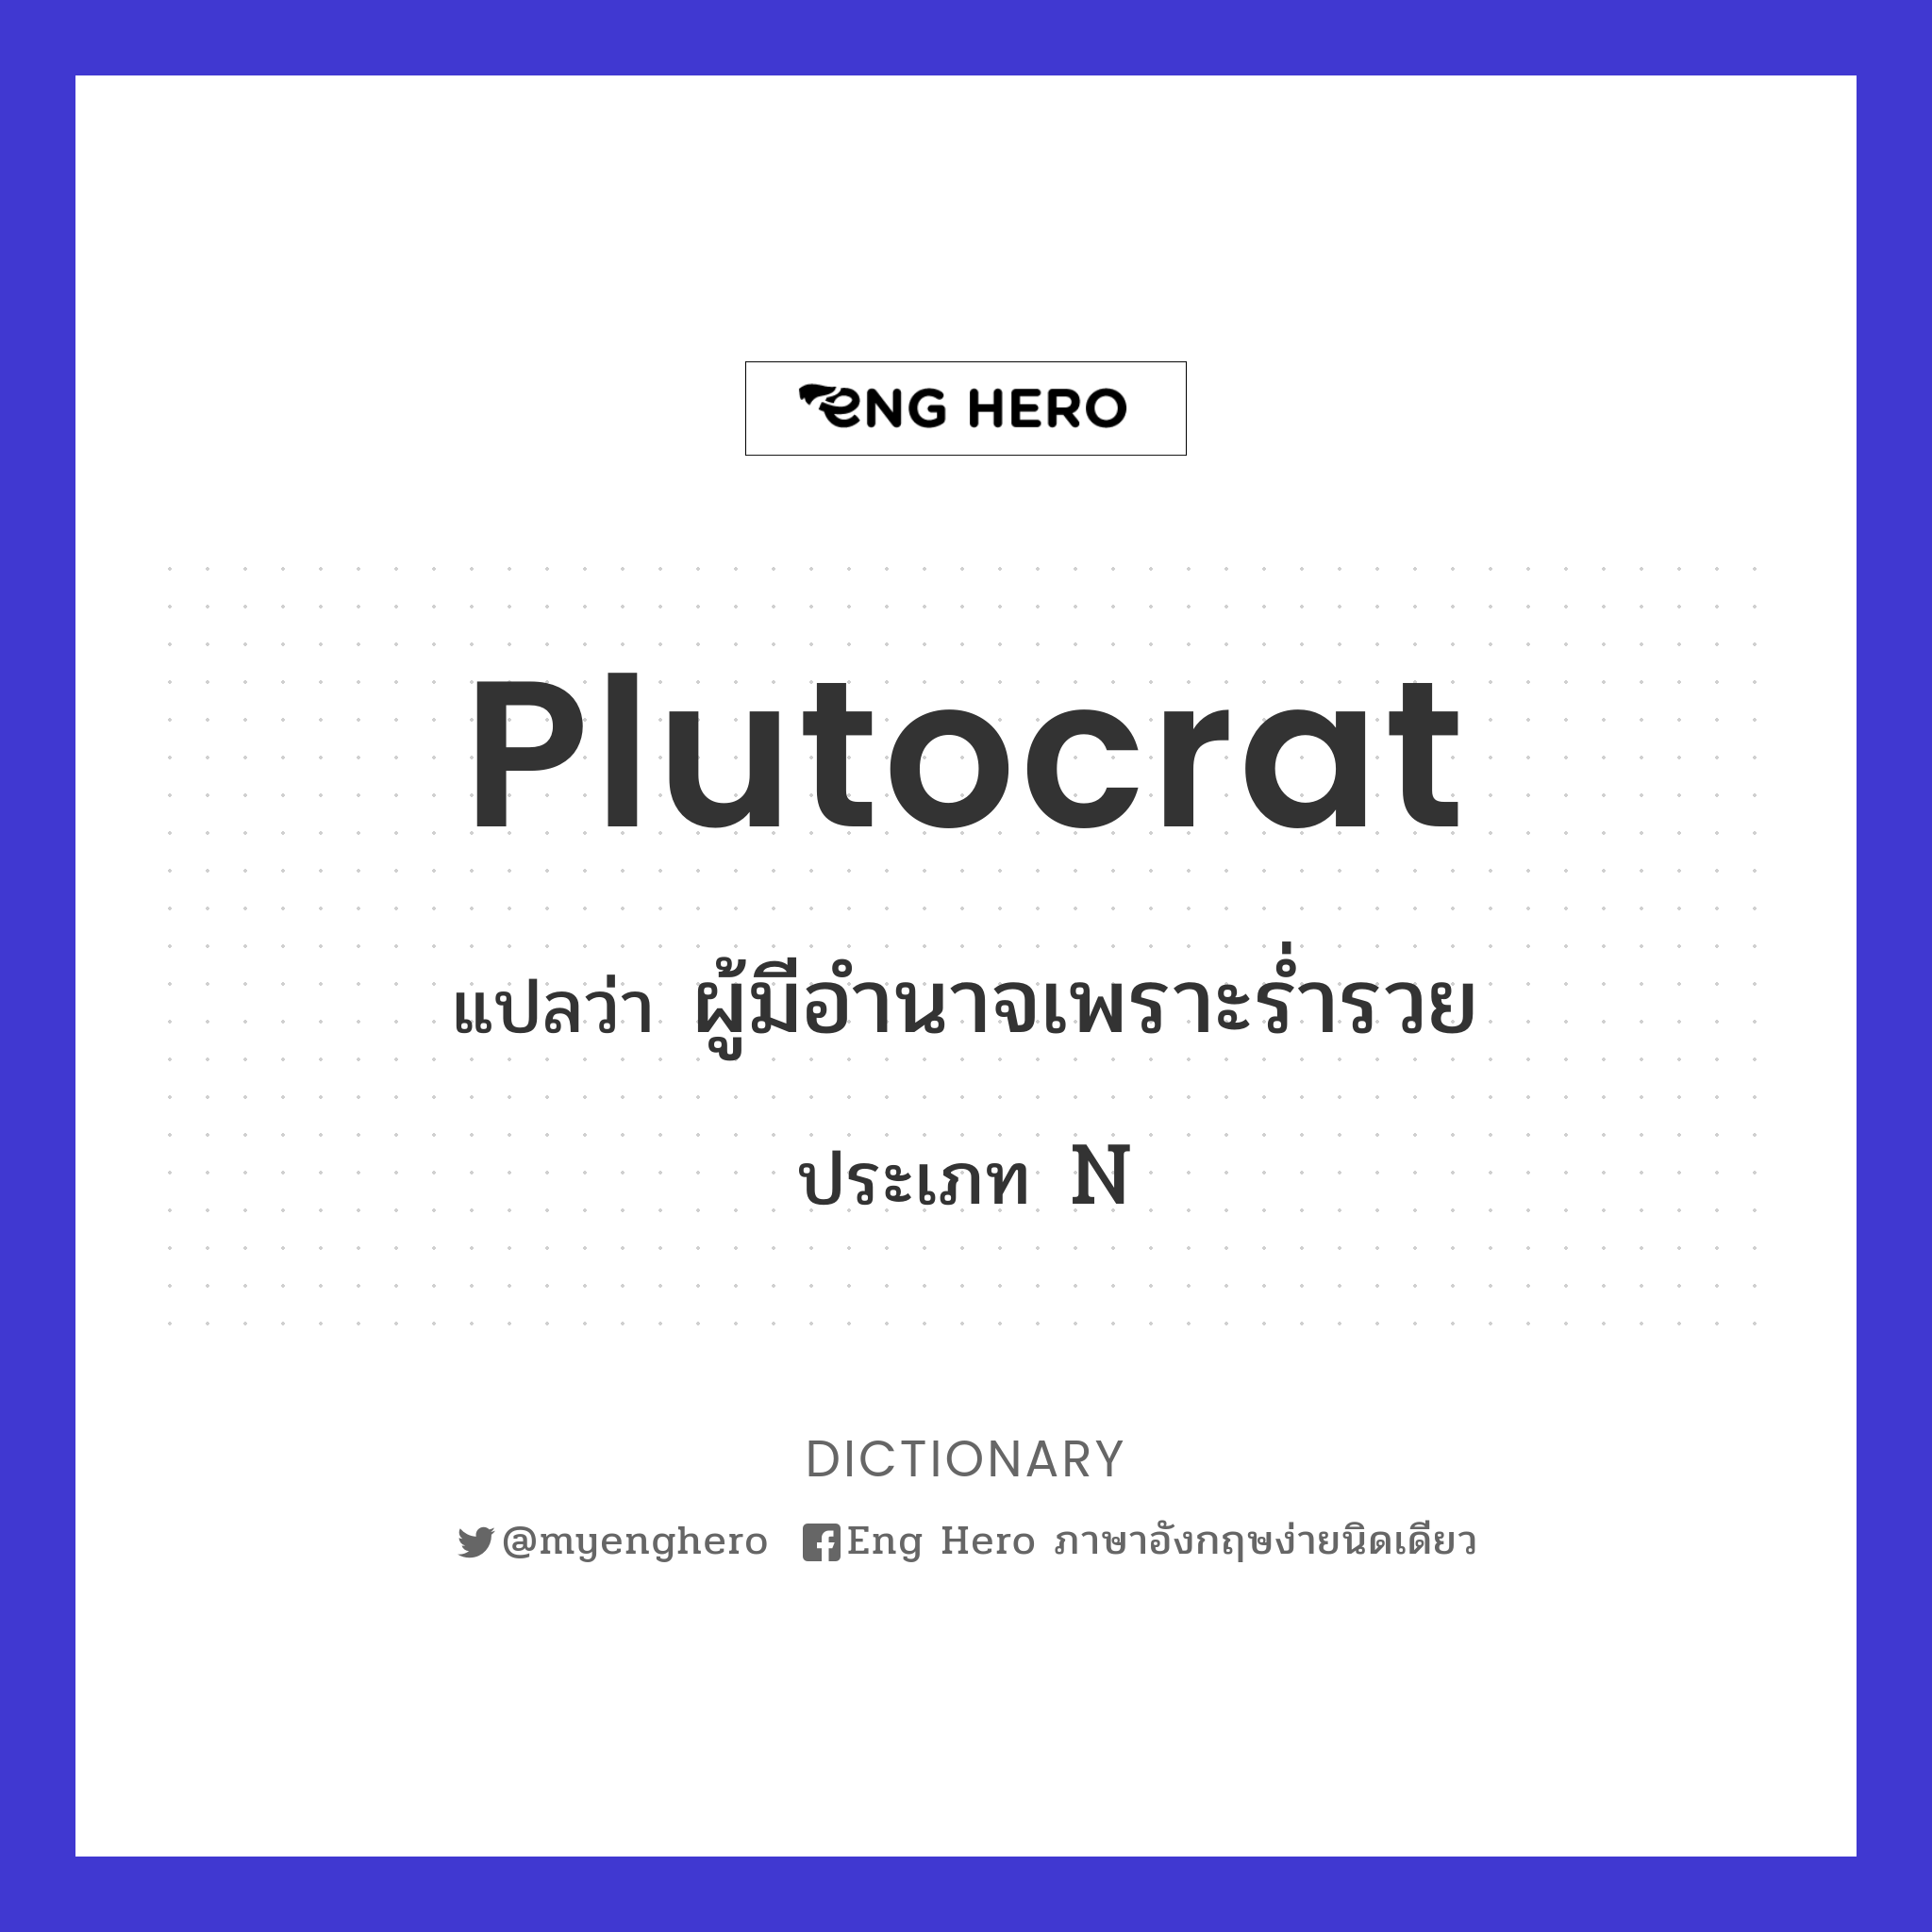 plutocrat